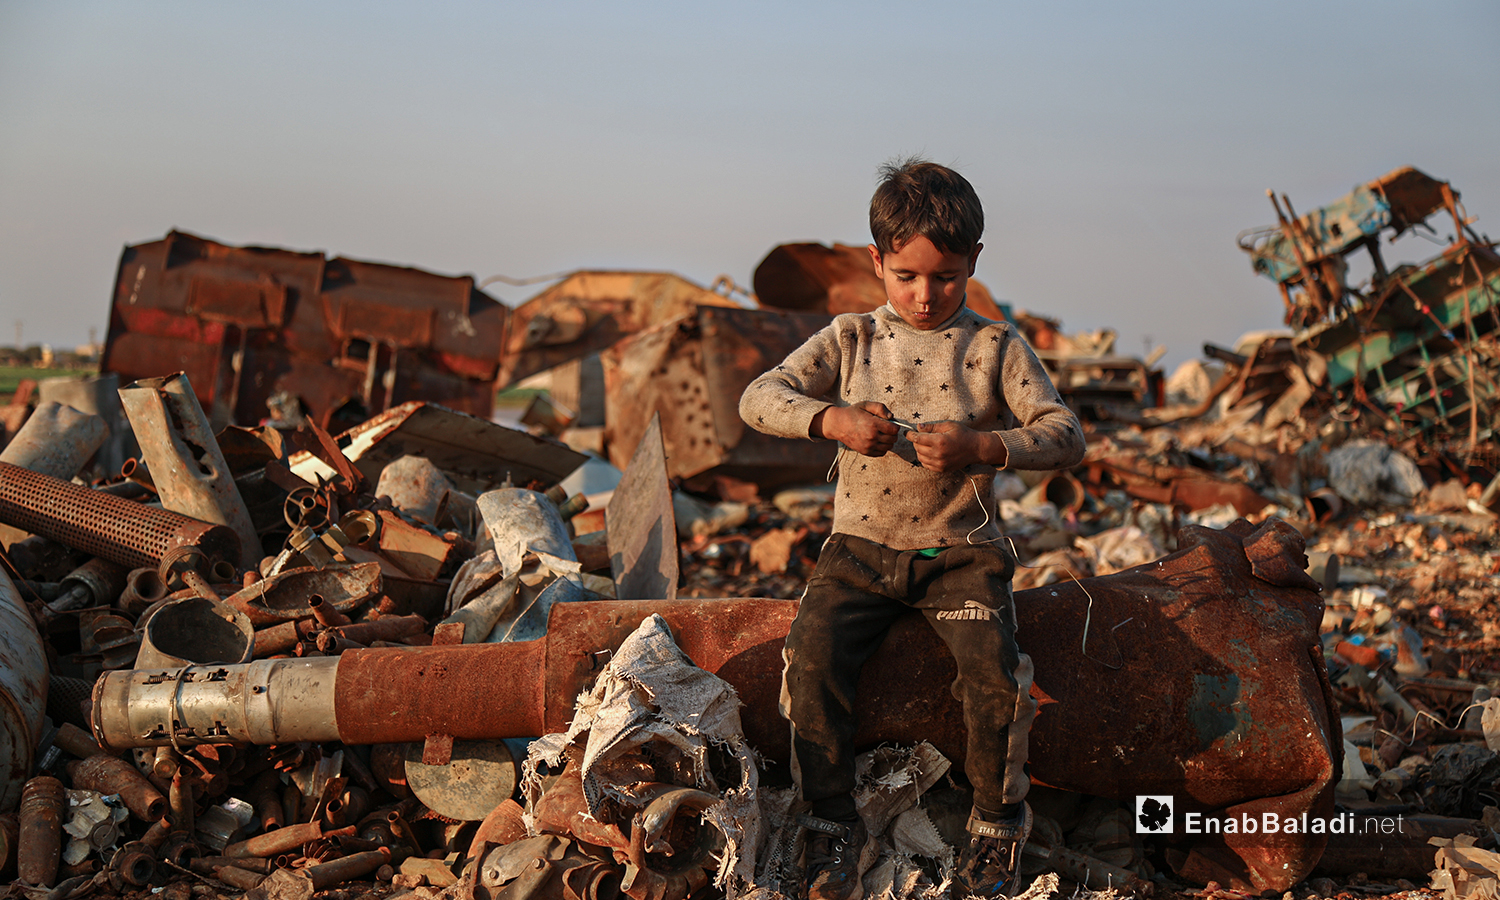 لا يعي الأطفال المخاطر التي يواجهونها في ساحة تفكيك الصواريخ والقذائف غير المتفجرة مع تعرضهم للخطر المستمر في شمال غربي سوريا الذي ما زال يتعرض للاستهداف والقصف منذ نحو عشر سنوات - 5 آذار 2021 (عنب بلدي/ يوسف غريبي)
